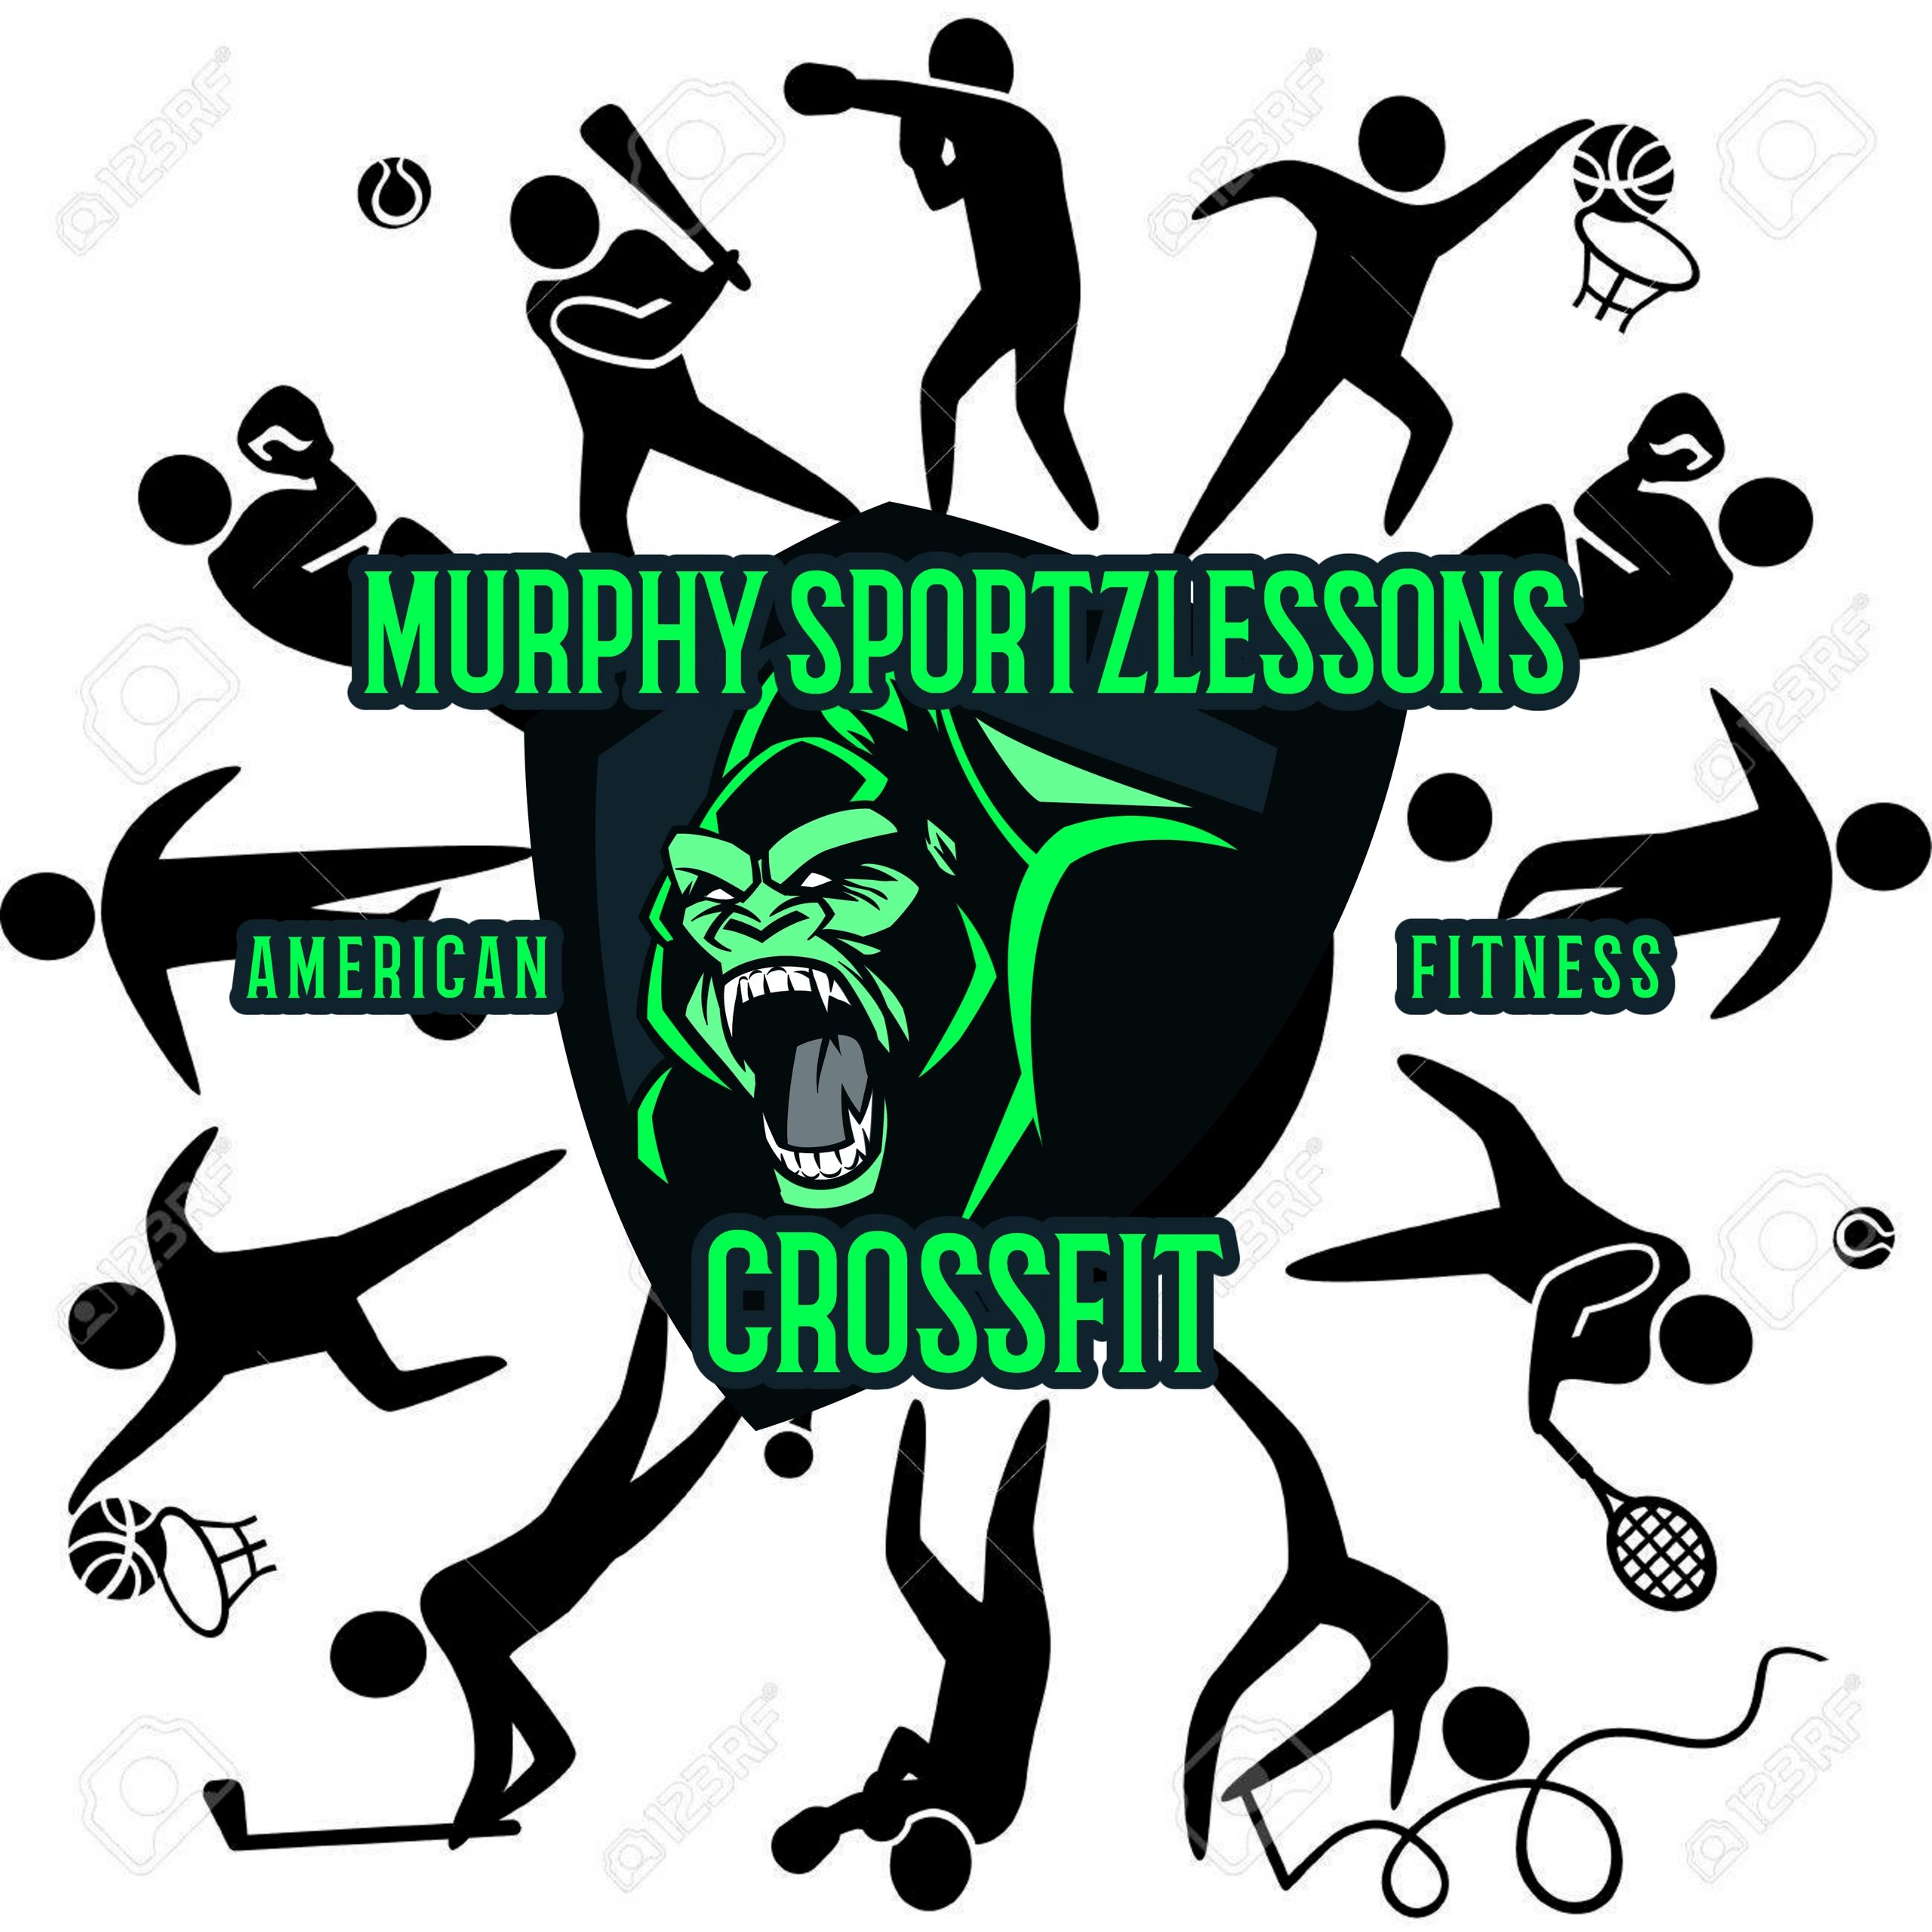 #sports lesson gorilla logo#englewood florida soccer club,# englewood futsal.#englewood Murphy Sport